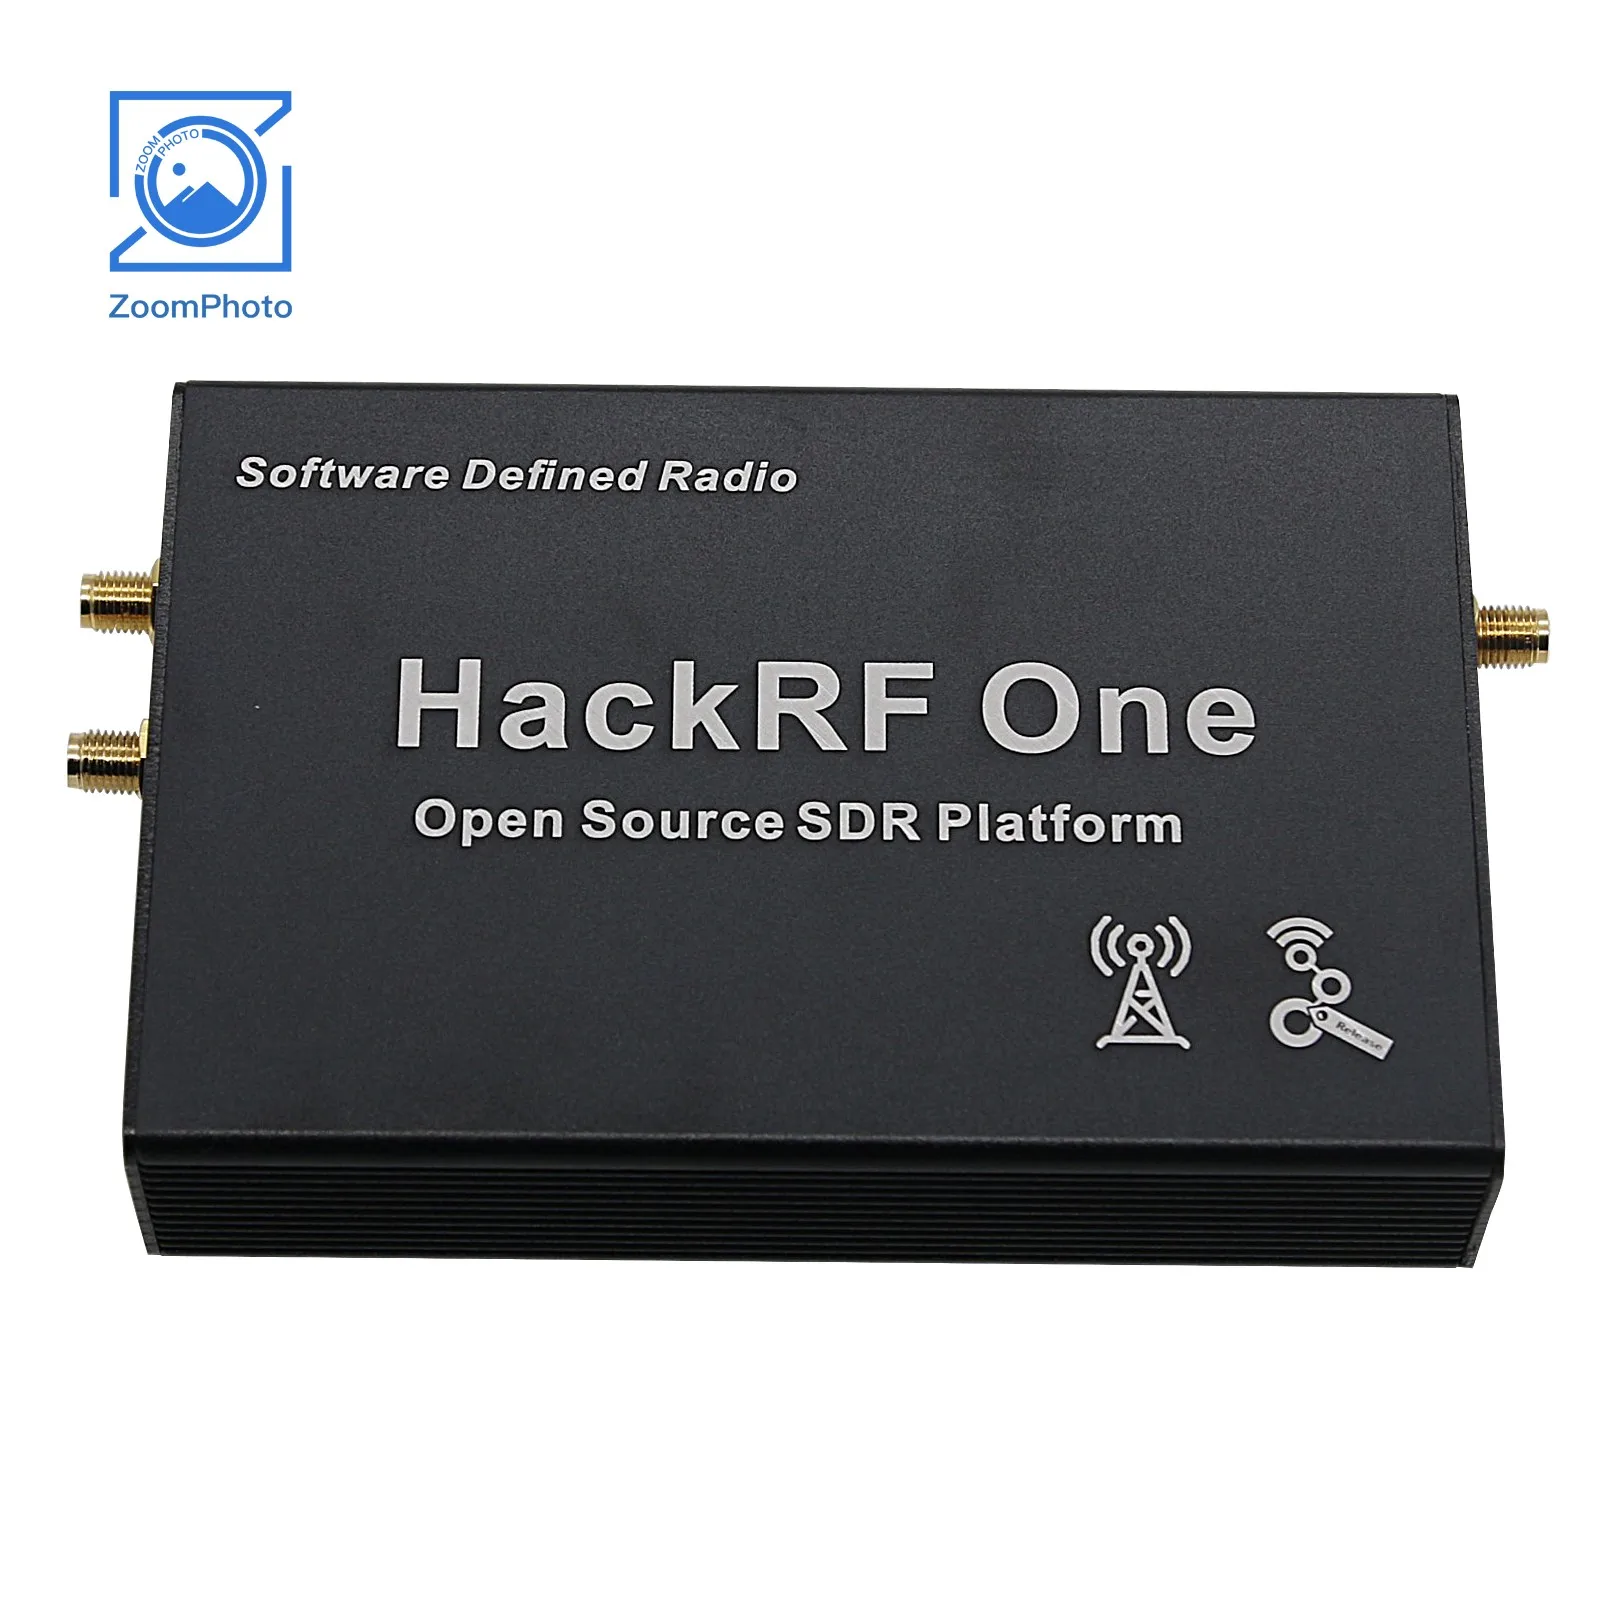 Hackrf-1つのソフトウェア定義されたラジオプラットフォーム、シェル付きのGPSシミュレーター、4つのアンテナ、1mhz-6ghz、v2.0.0